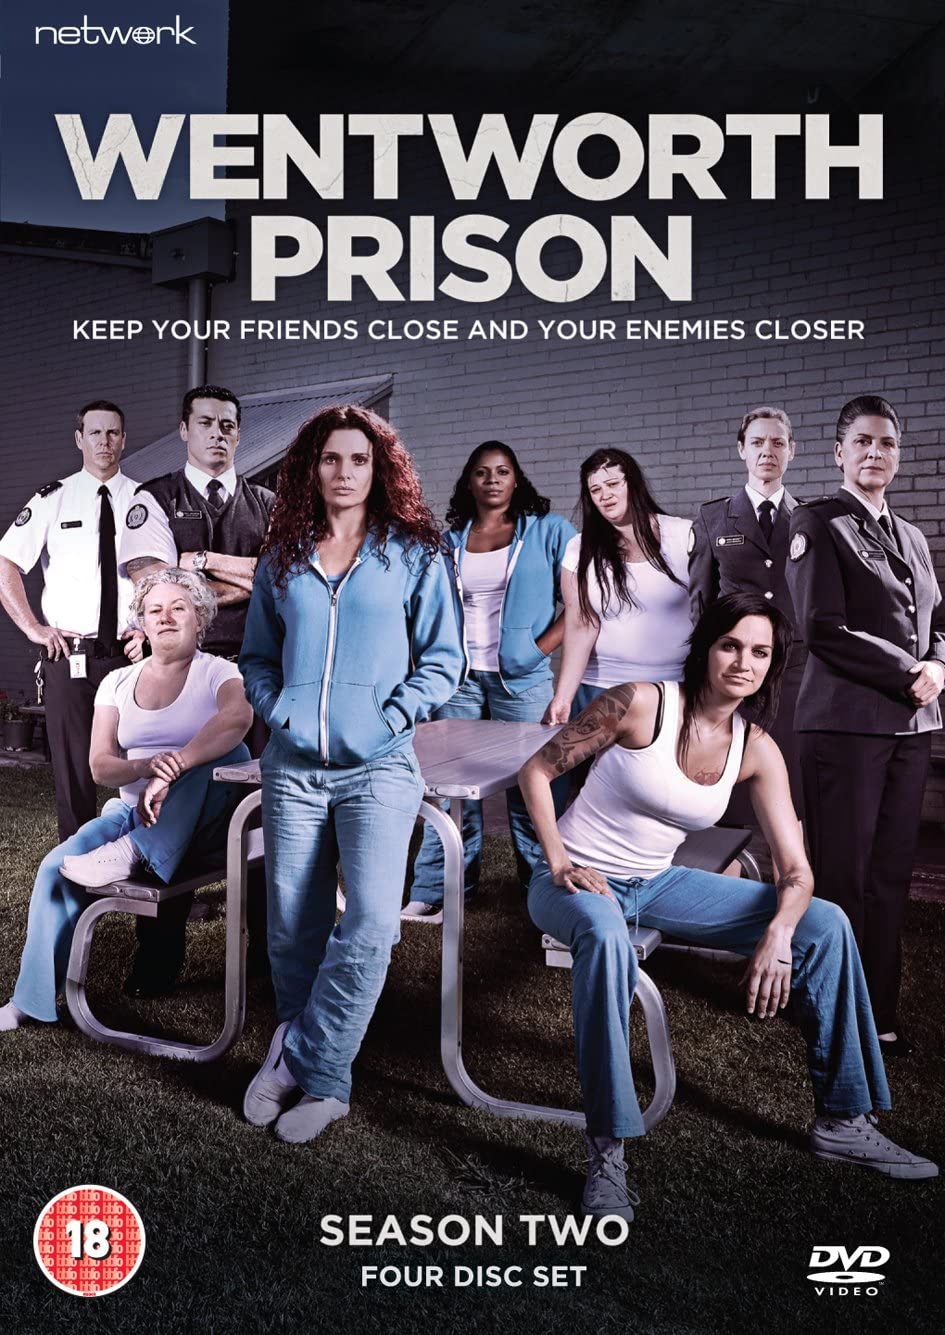 Wentworth Prison: Season Two - Drama [DVD]